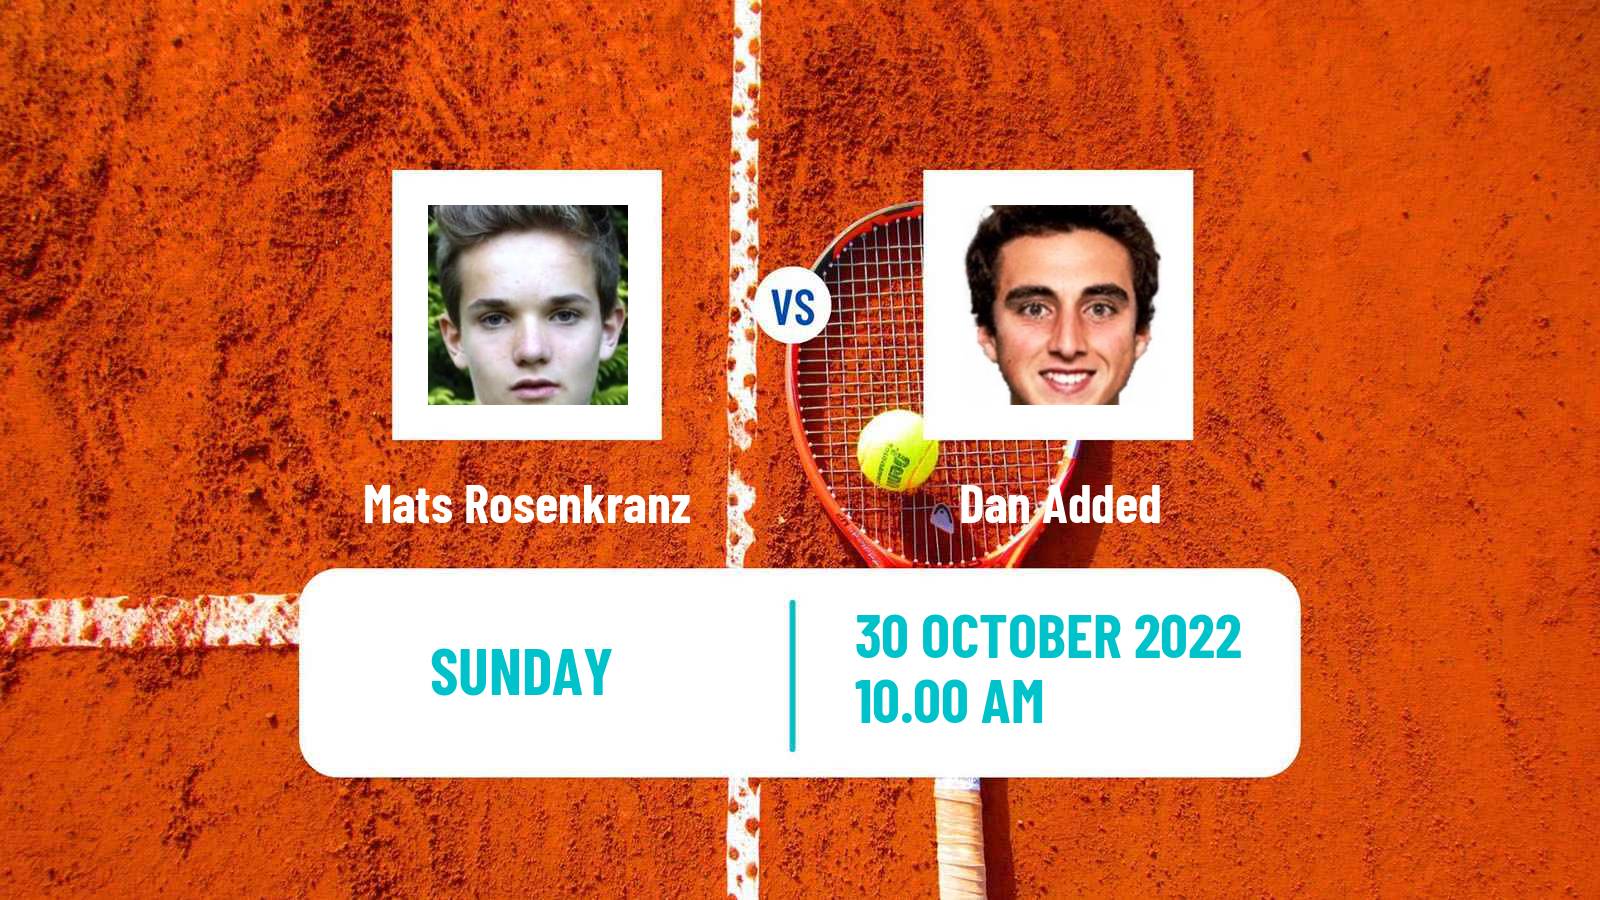 Tennis ITF Tournaments Mats Rosenkranz - Dan Added